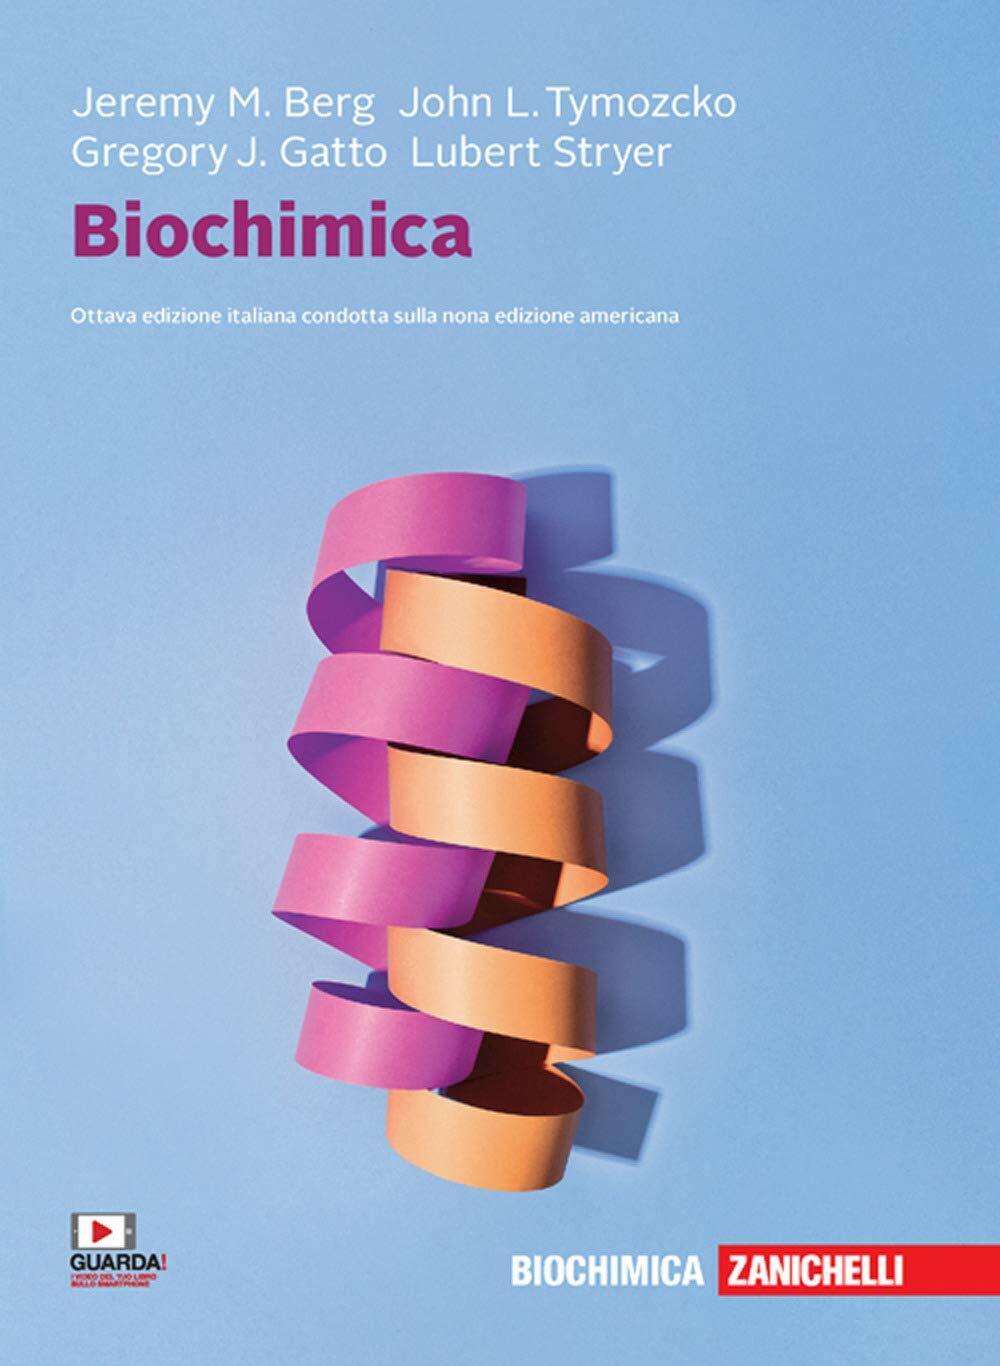 Biochimica - Jeremy M. Berg, John L. Tymoczko, Lubert Stryer - Zanichelli, 2020 libro usato